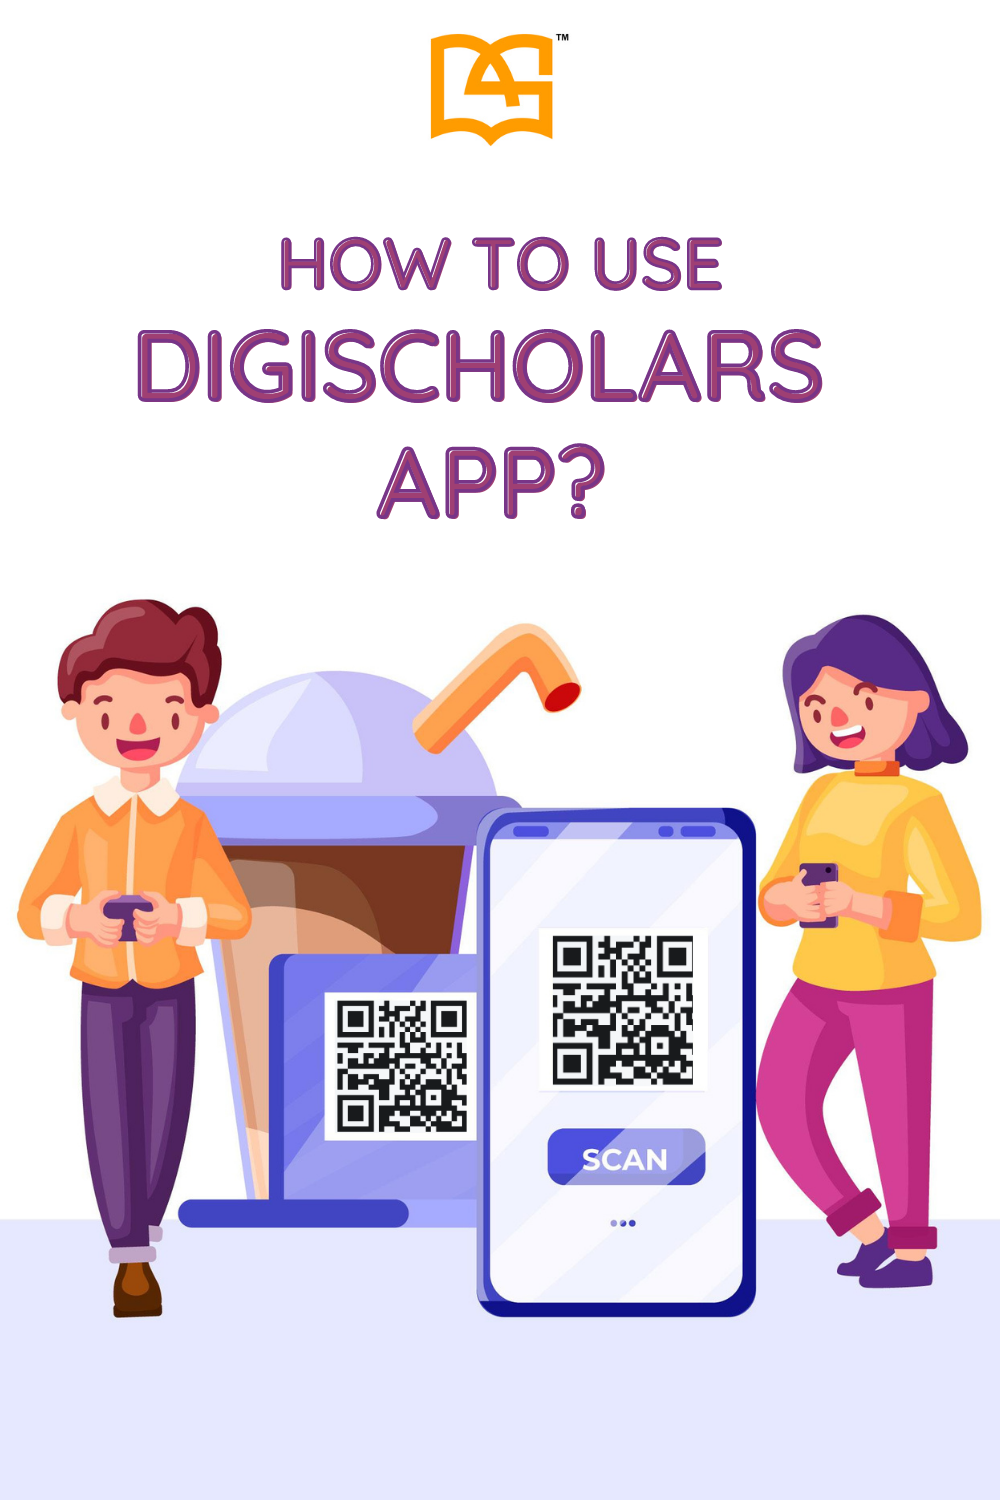 How to use digischolars app